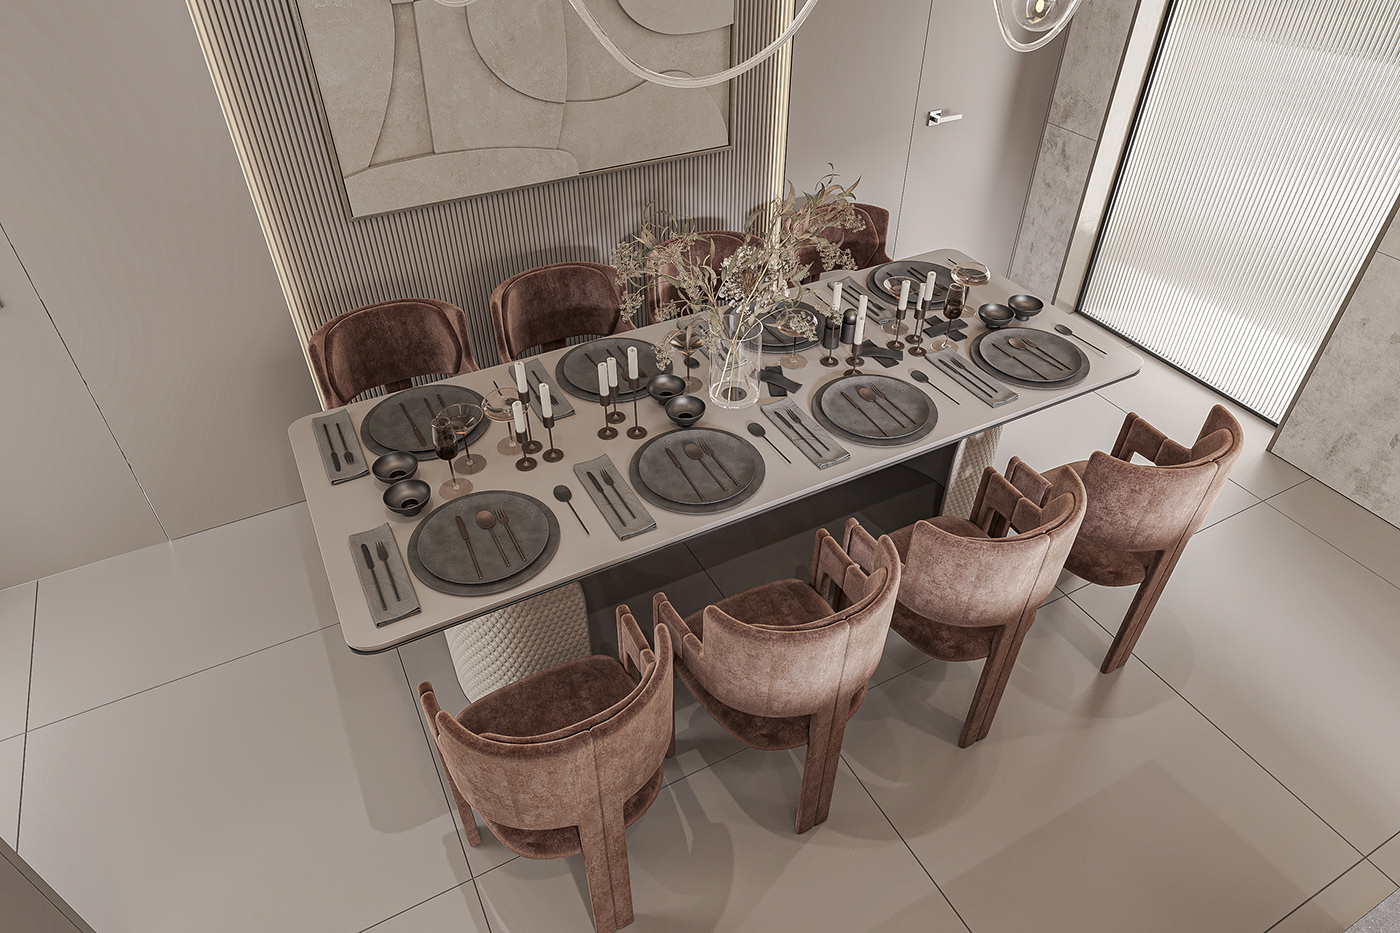 3ds max 3dvisualization Behance corona Interior interior design  kitchen minimalist Render warm